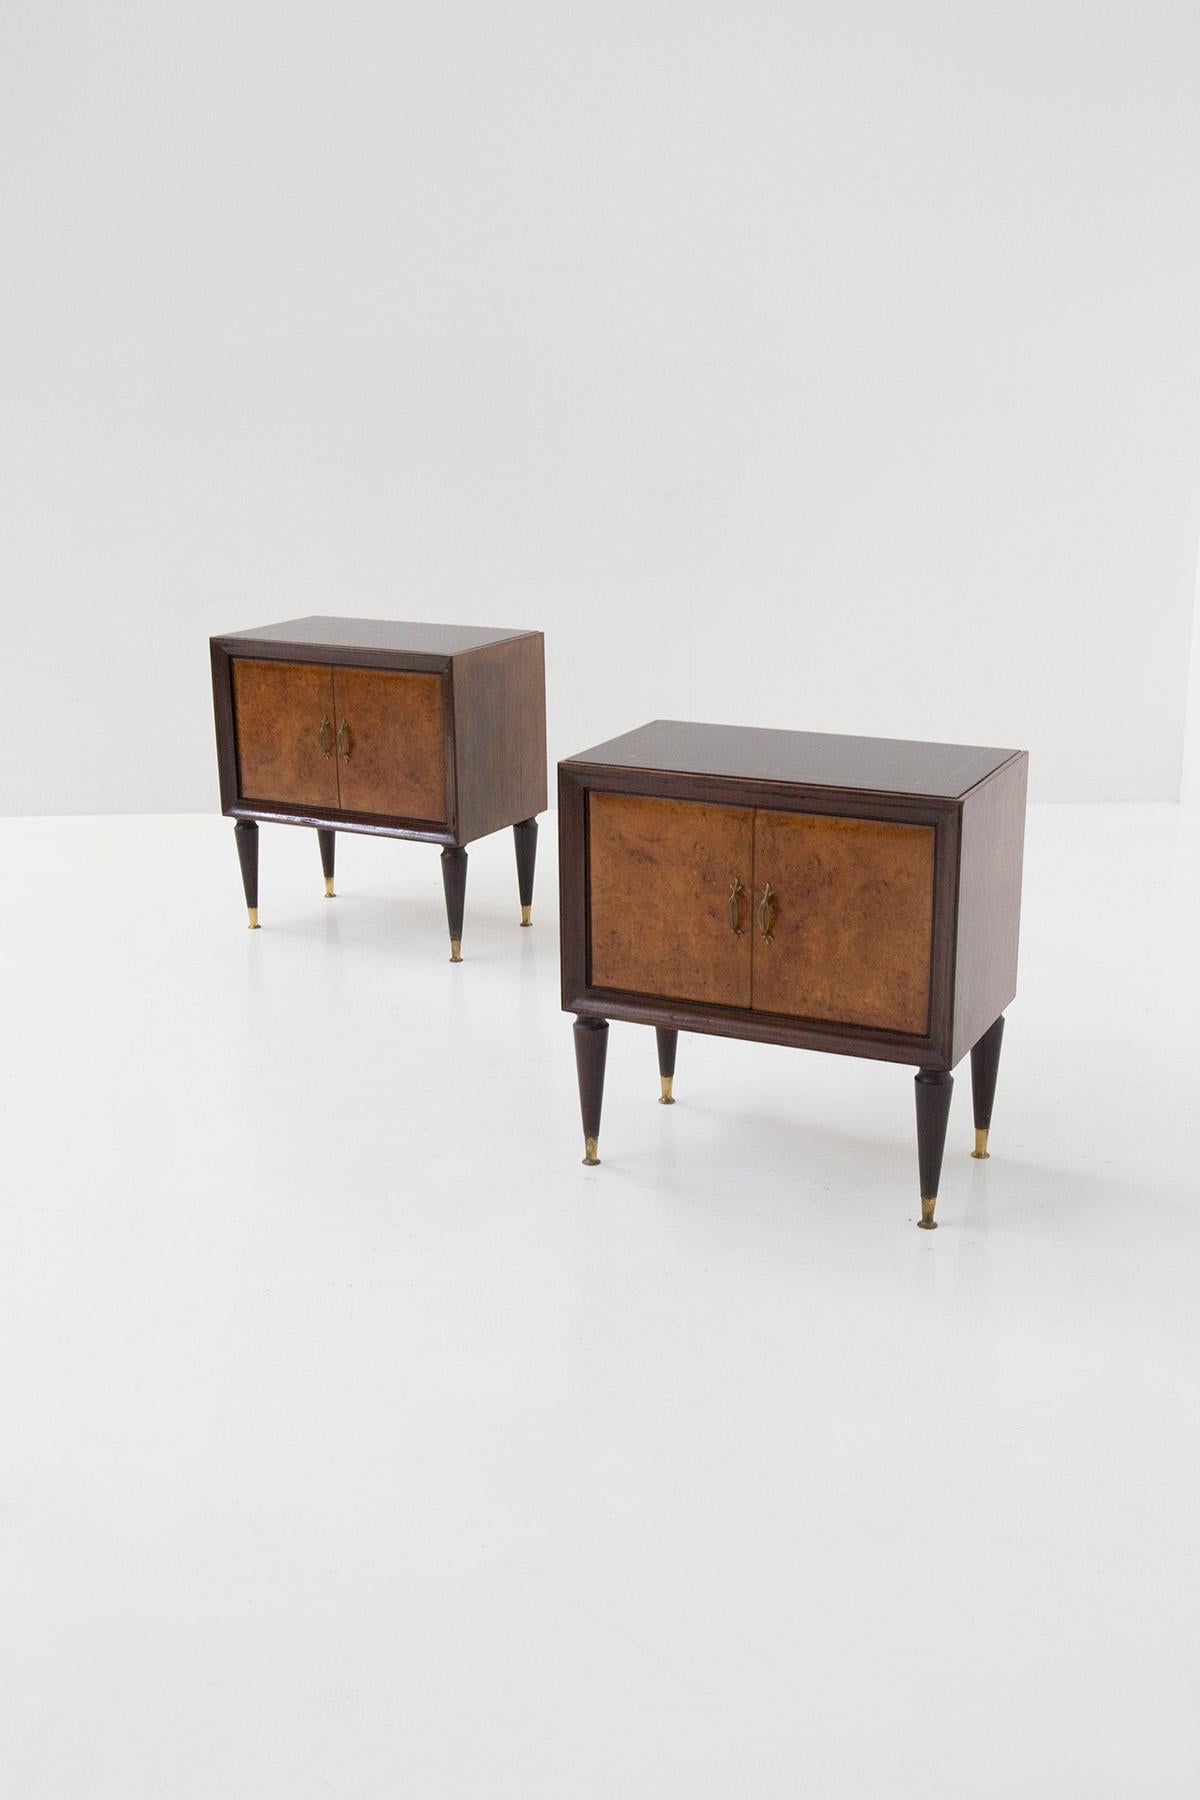 Elegante paire de tables de chevet italiennes des années 1950 attribuées à Paolo Buffa. Les tables de chevet présentent une ligne italienne typique du milieu du siècle. Ils sont faits de bois différents, en effet pour son cadre on remarque un bois